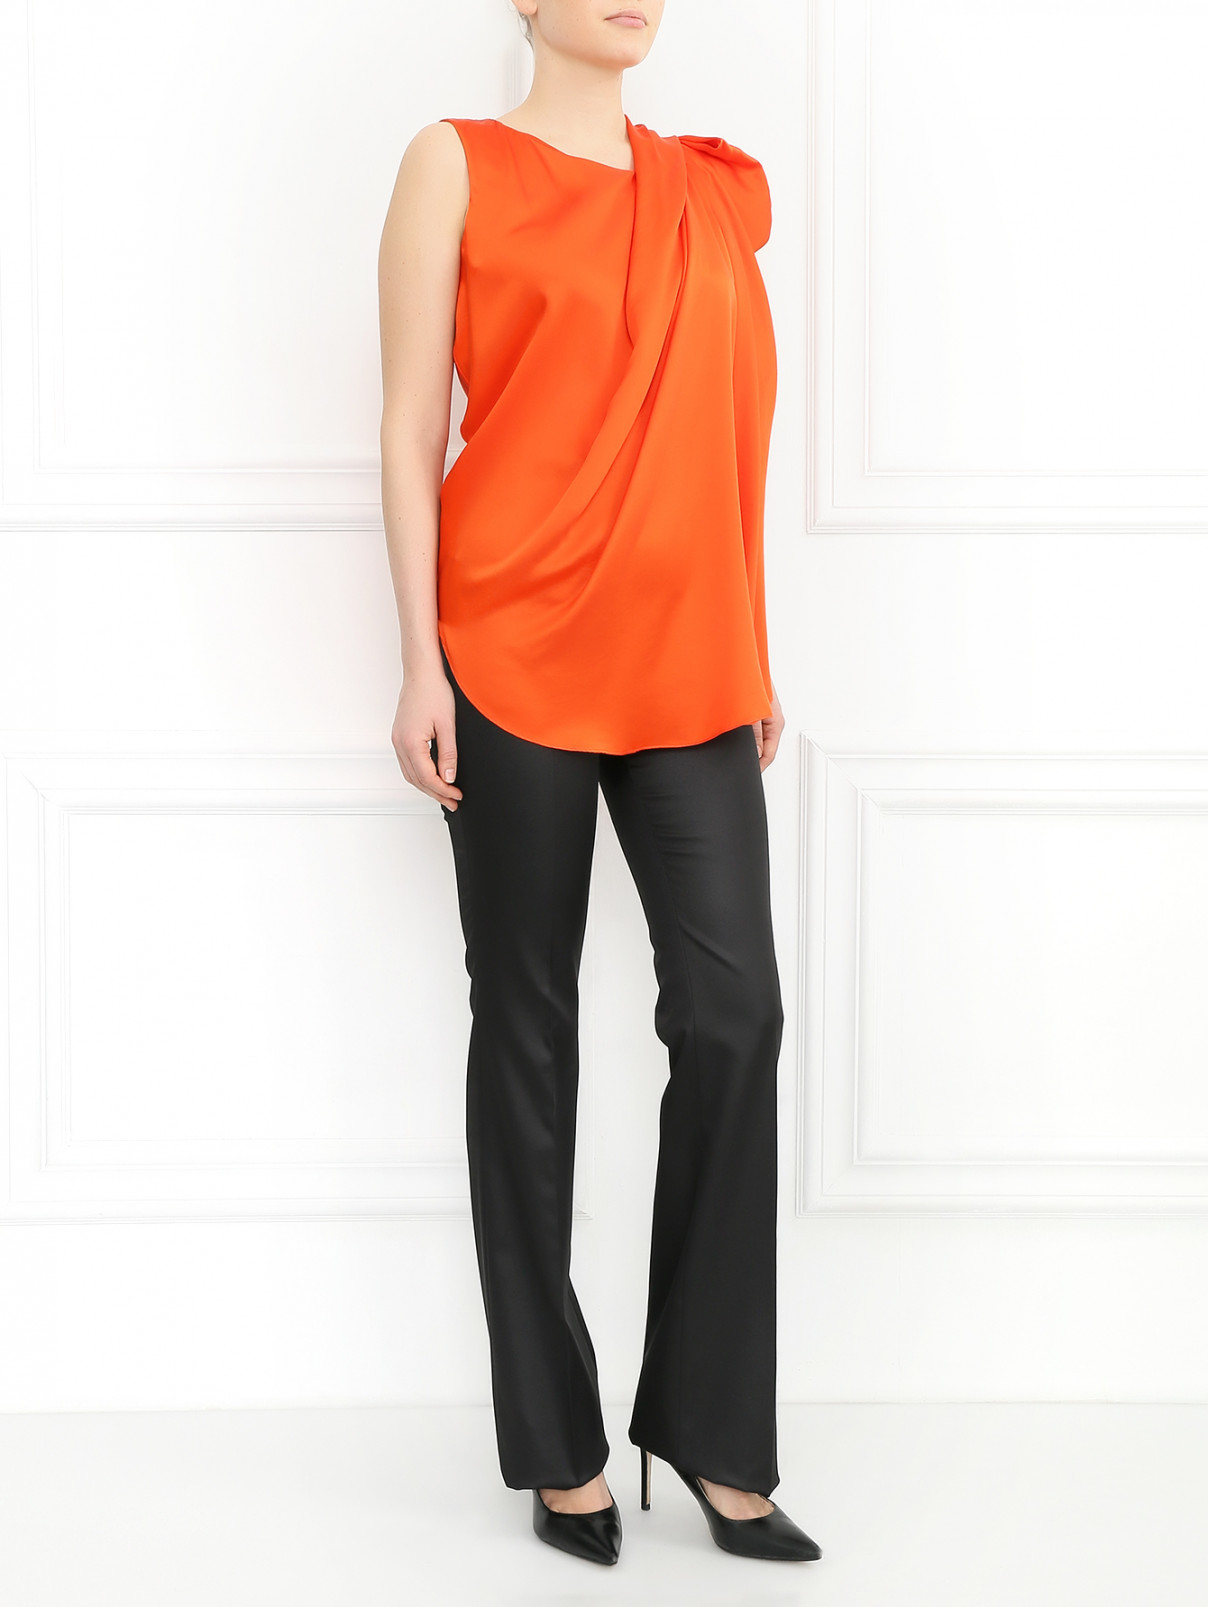 Блуза из шелка с драпировкой Dice Kayek  –  Модель Общий вид  – Цвет:  Оранжевый